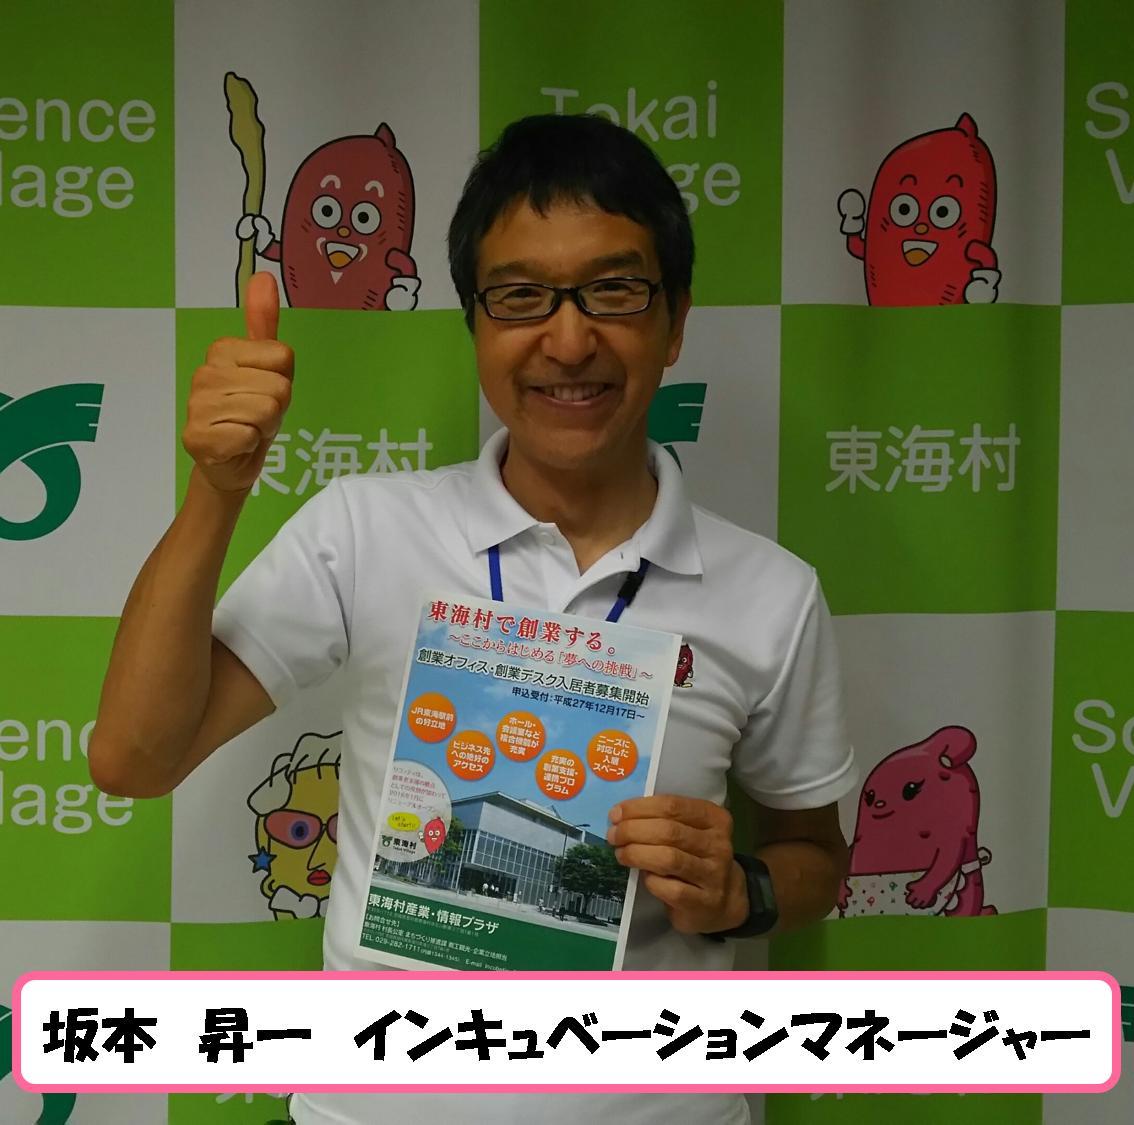 チラシを持って笑顔で写る坂本昇一インキュベーションマネージャーの写真